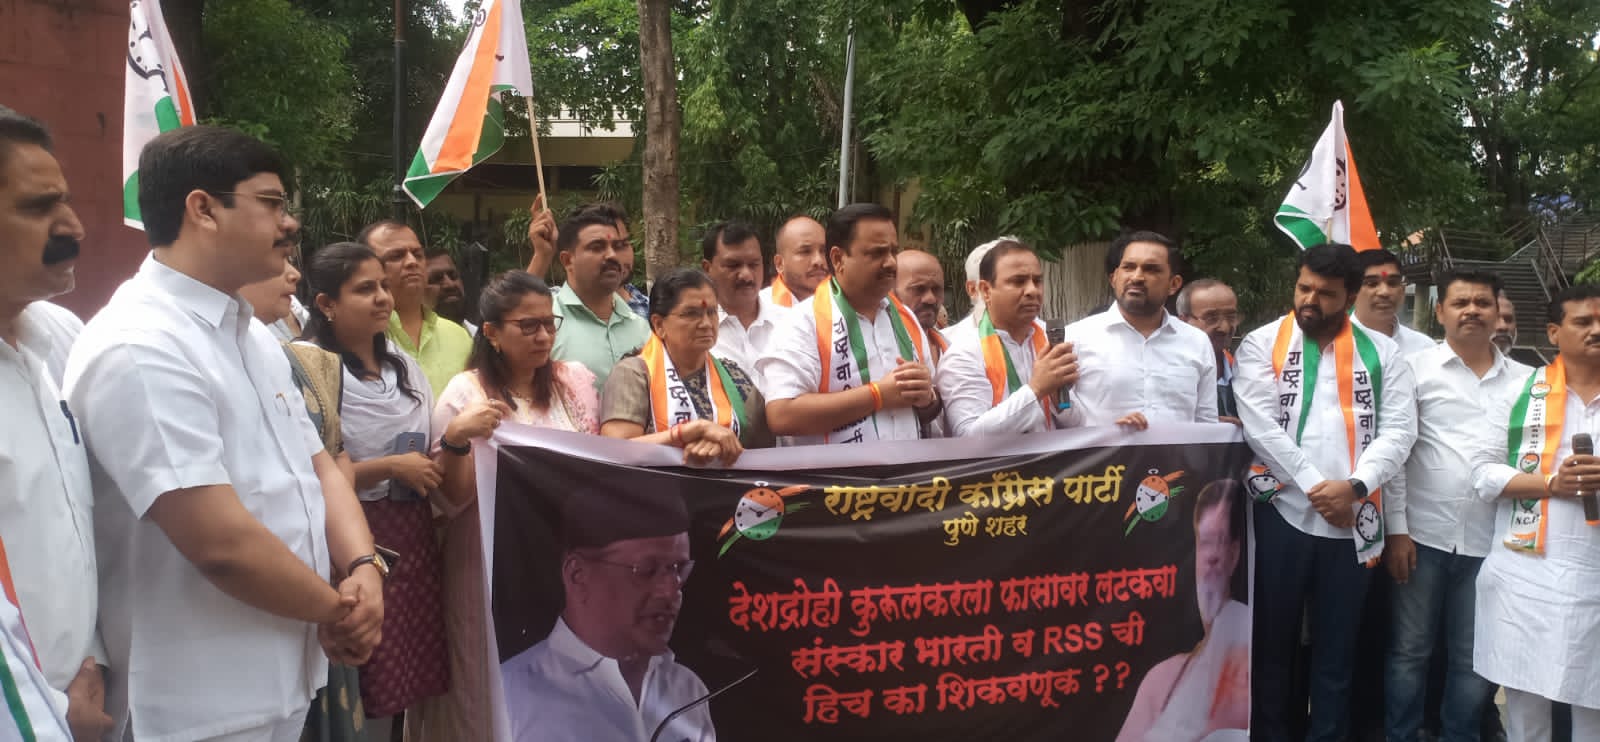 Dr. Pradeep Kurulkar Latest News | NCP Agitation | डॉं. कुरूलकरच्या विरोधात राष्ट्रवादी कॉंग्रेसची तिव्र निदर्शनें